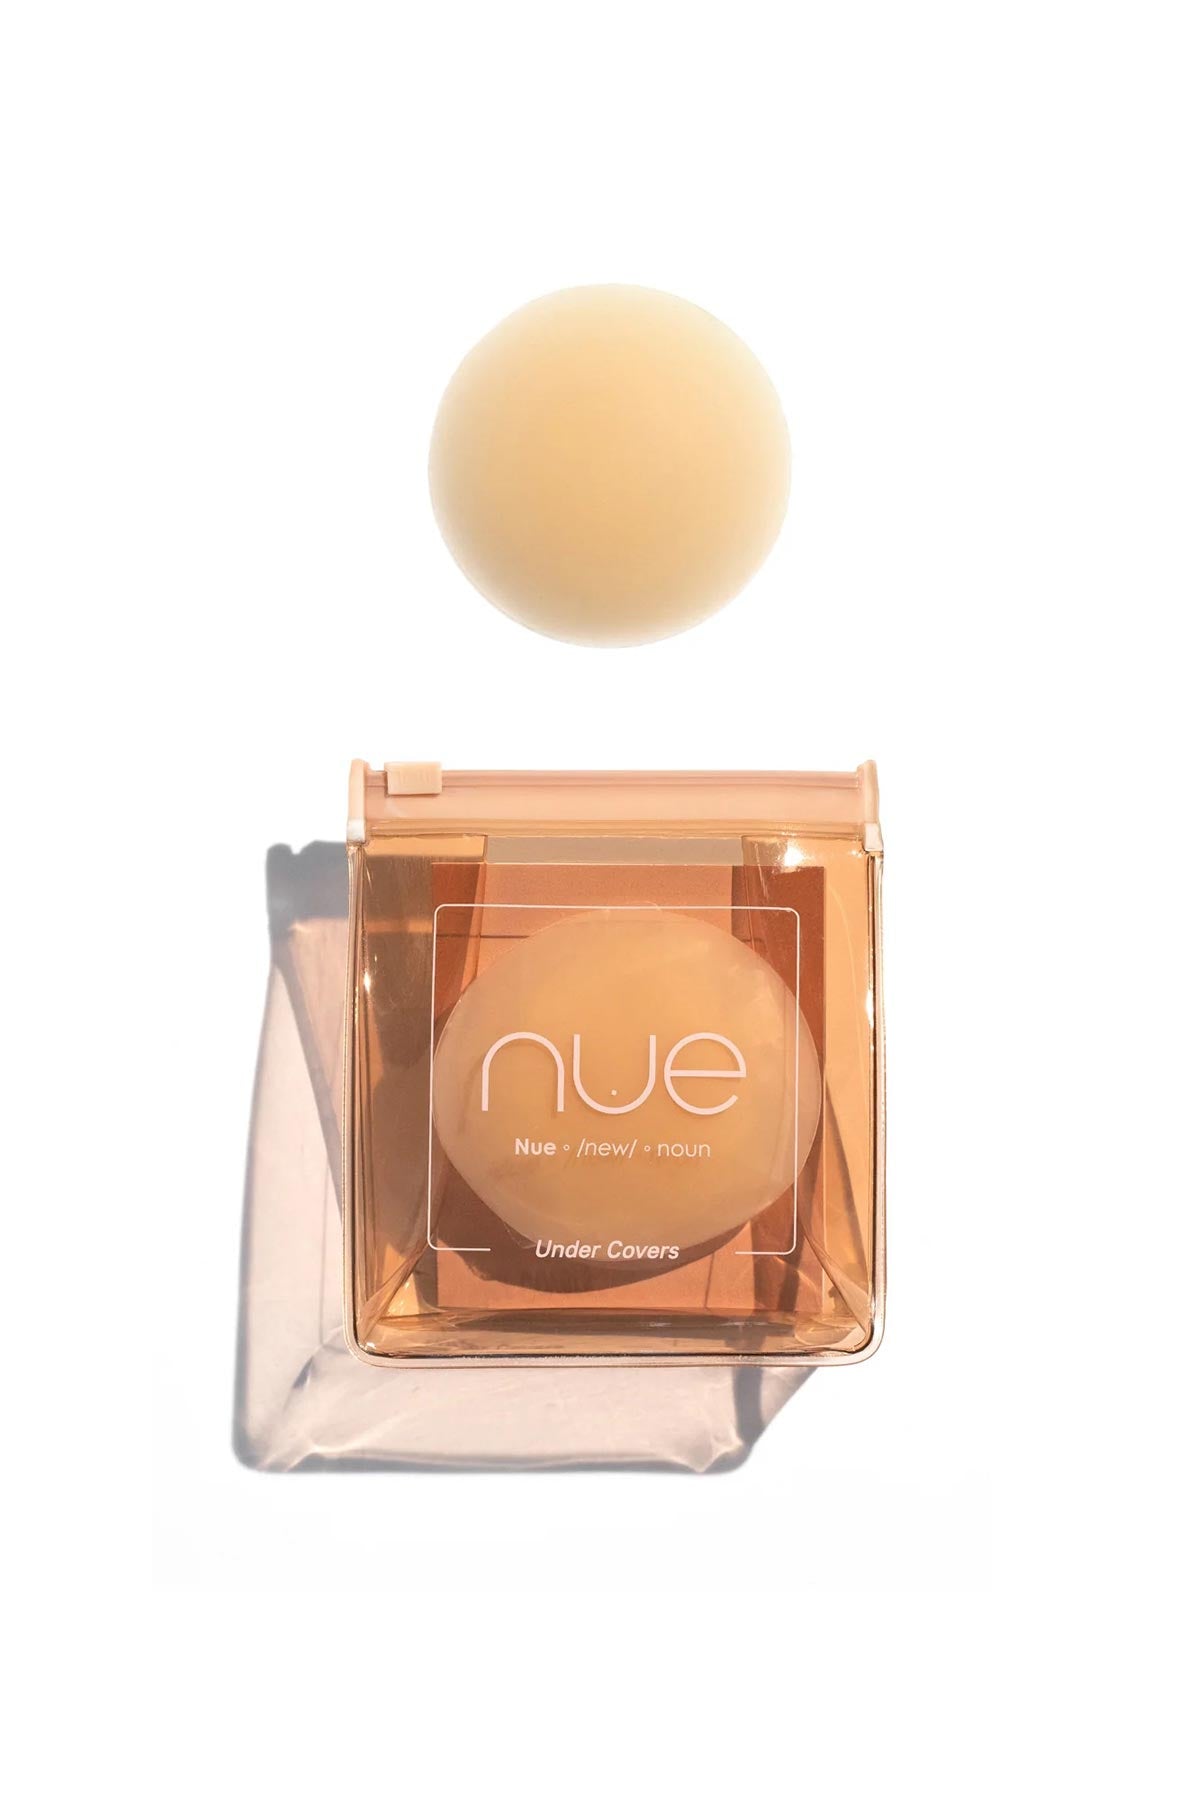 Nue - Light/Medium Pasties